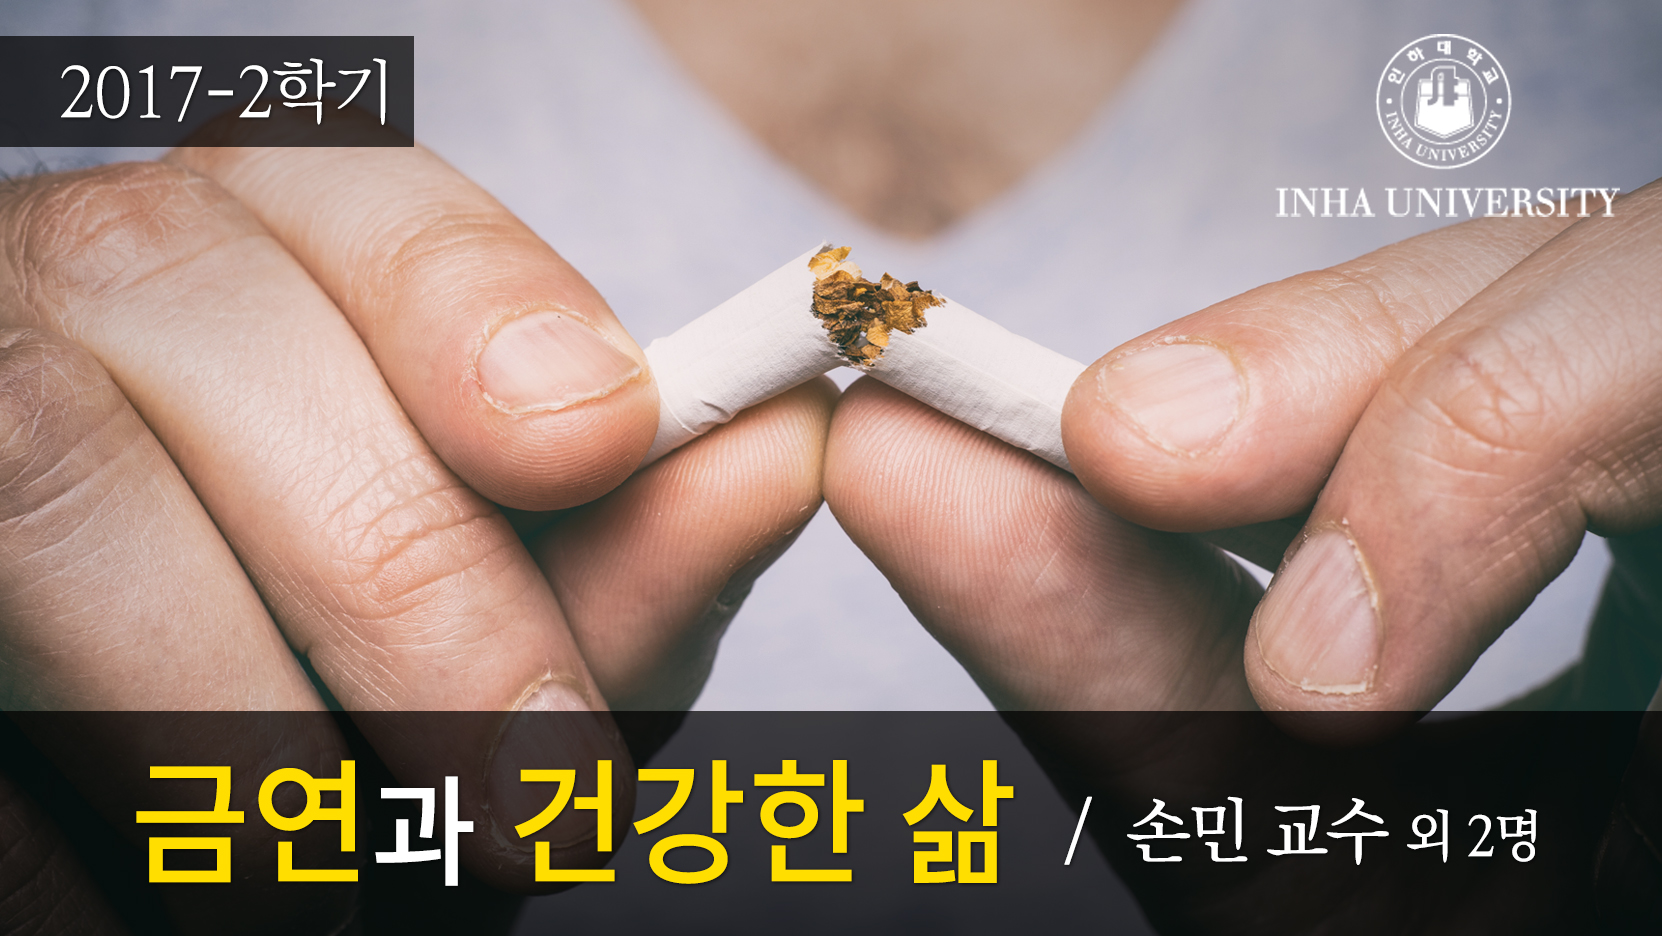 금연과 건강한 삶 개강일 2017-09-18 종강일 2017-12-31 강좌상태 종료